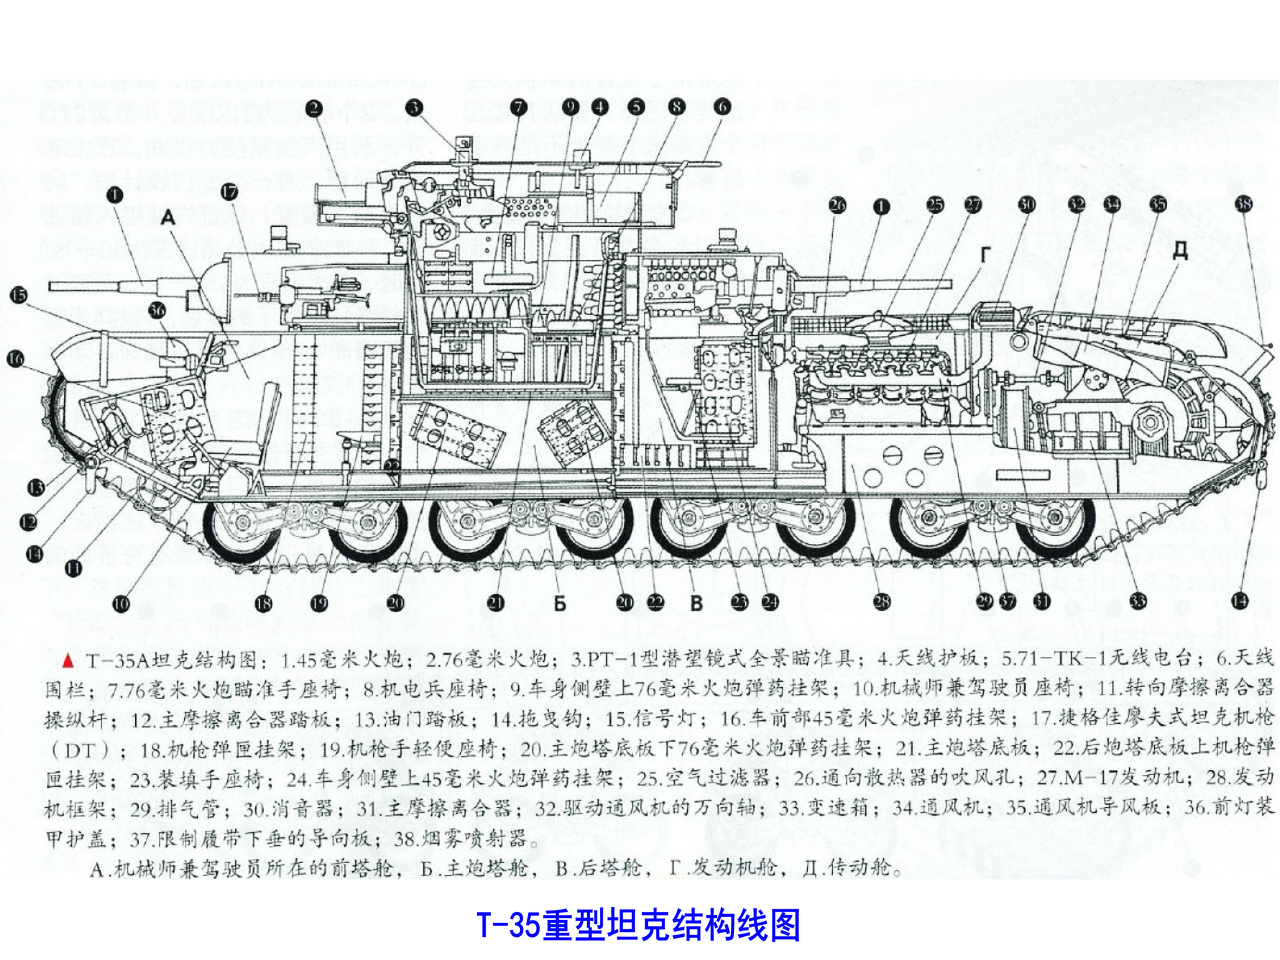 T-35重型坦克結構示意圖